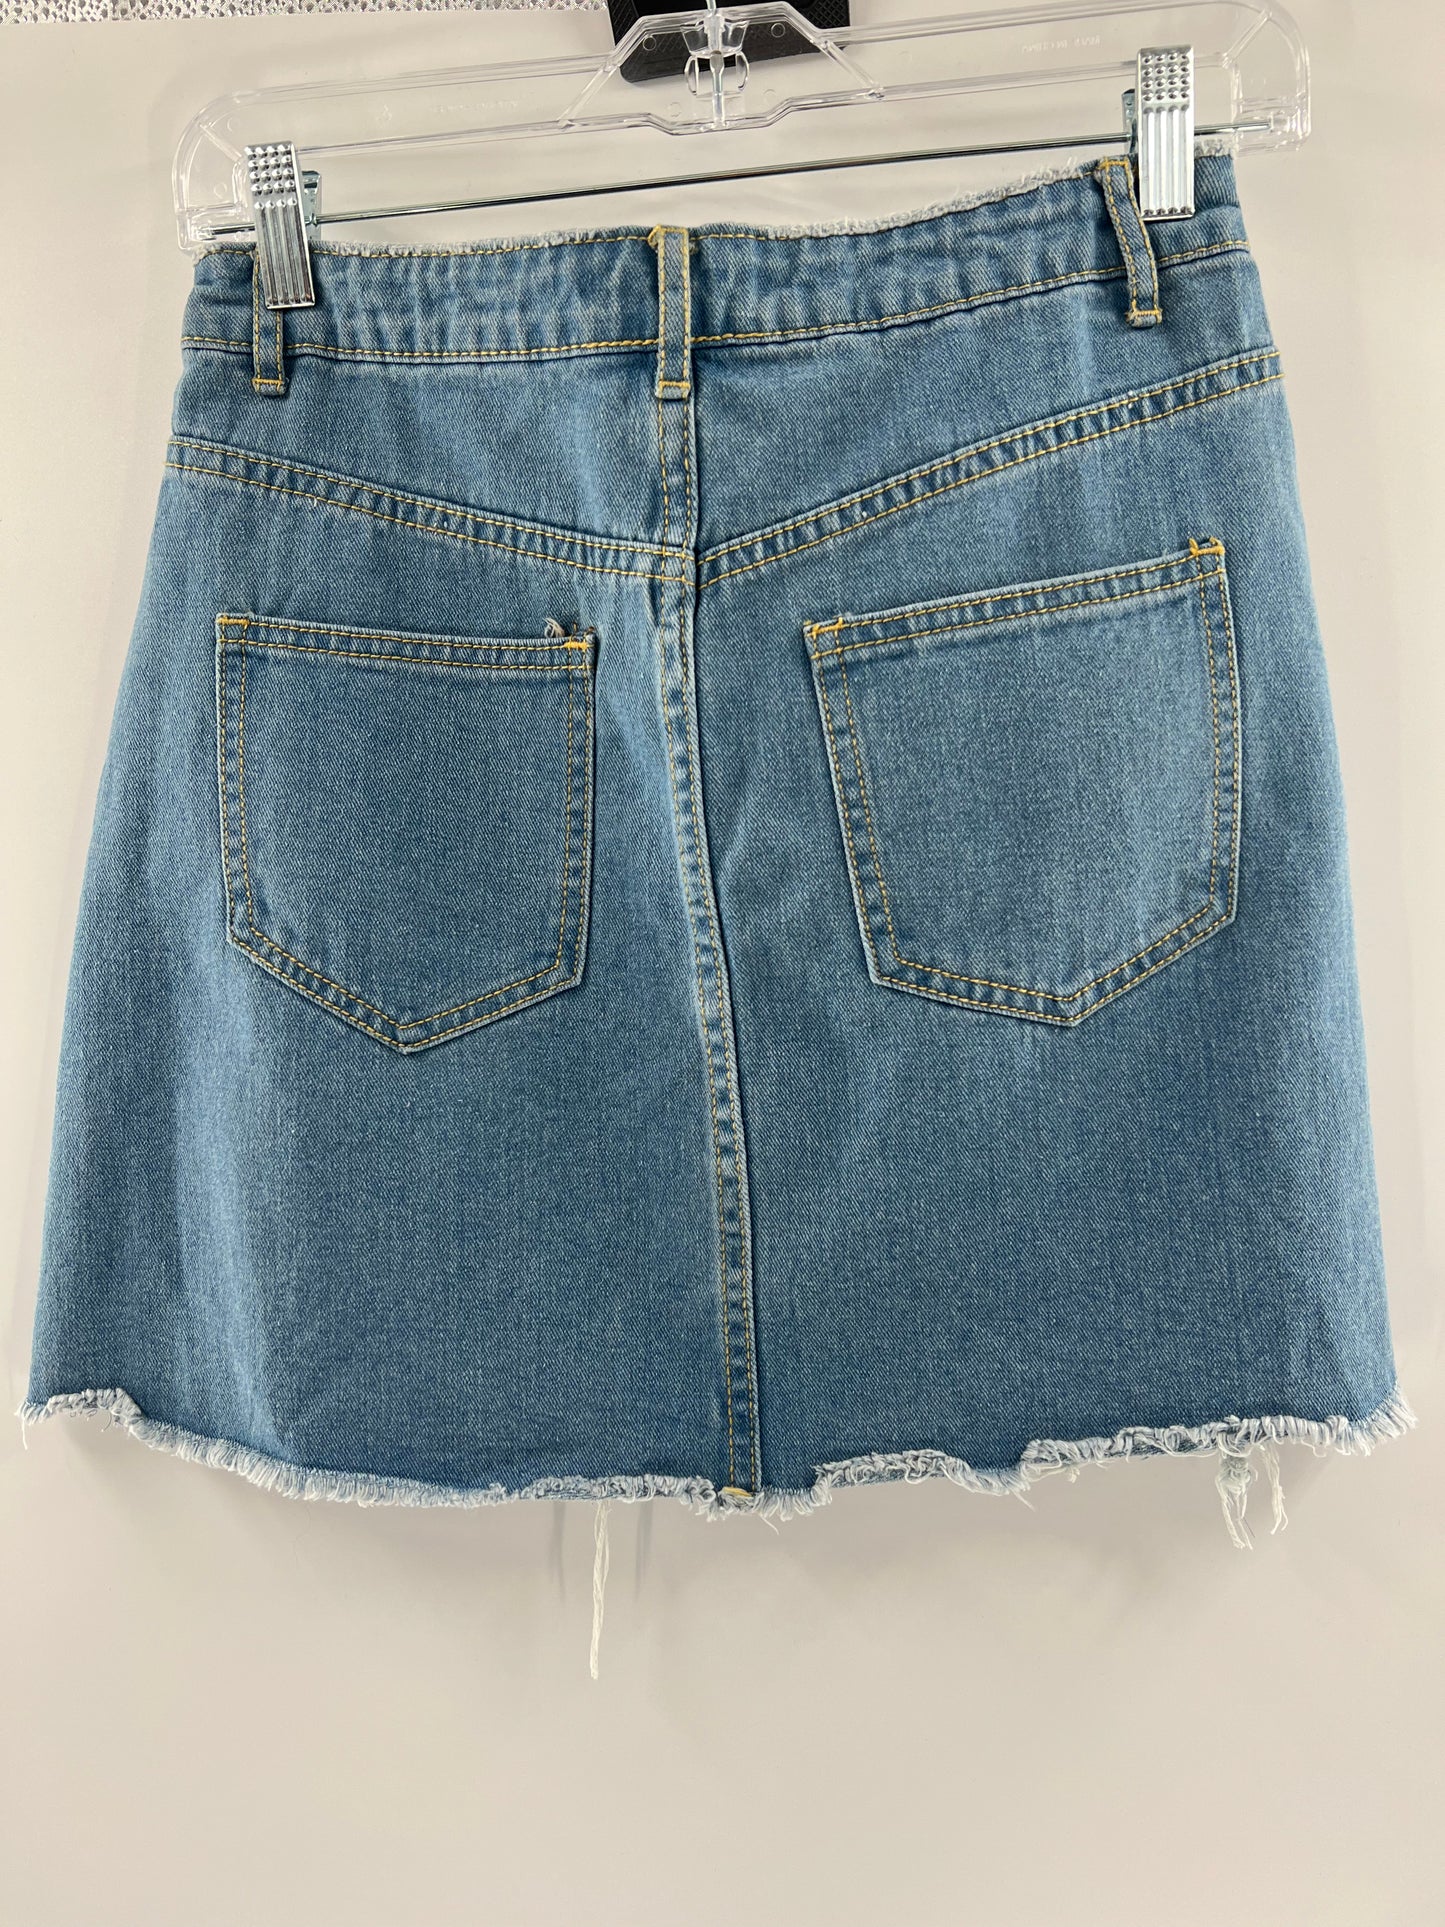 Misguided Denim Mini Skirt (Sz4)